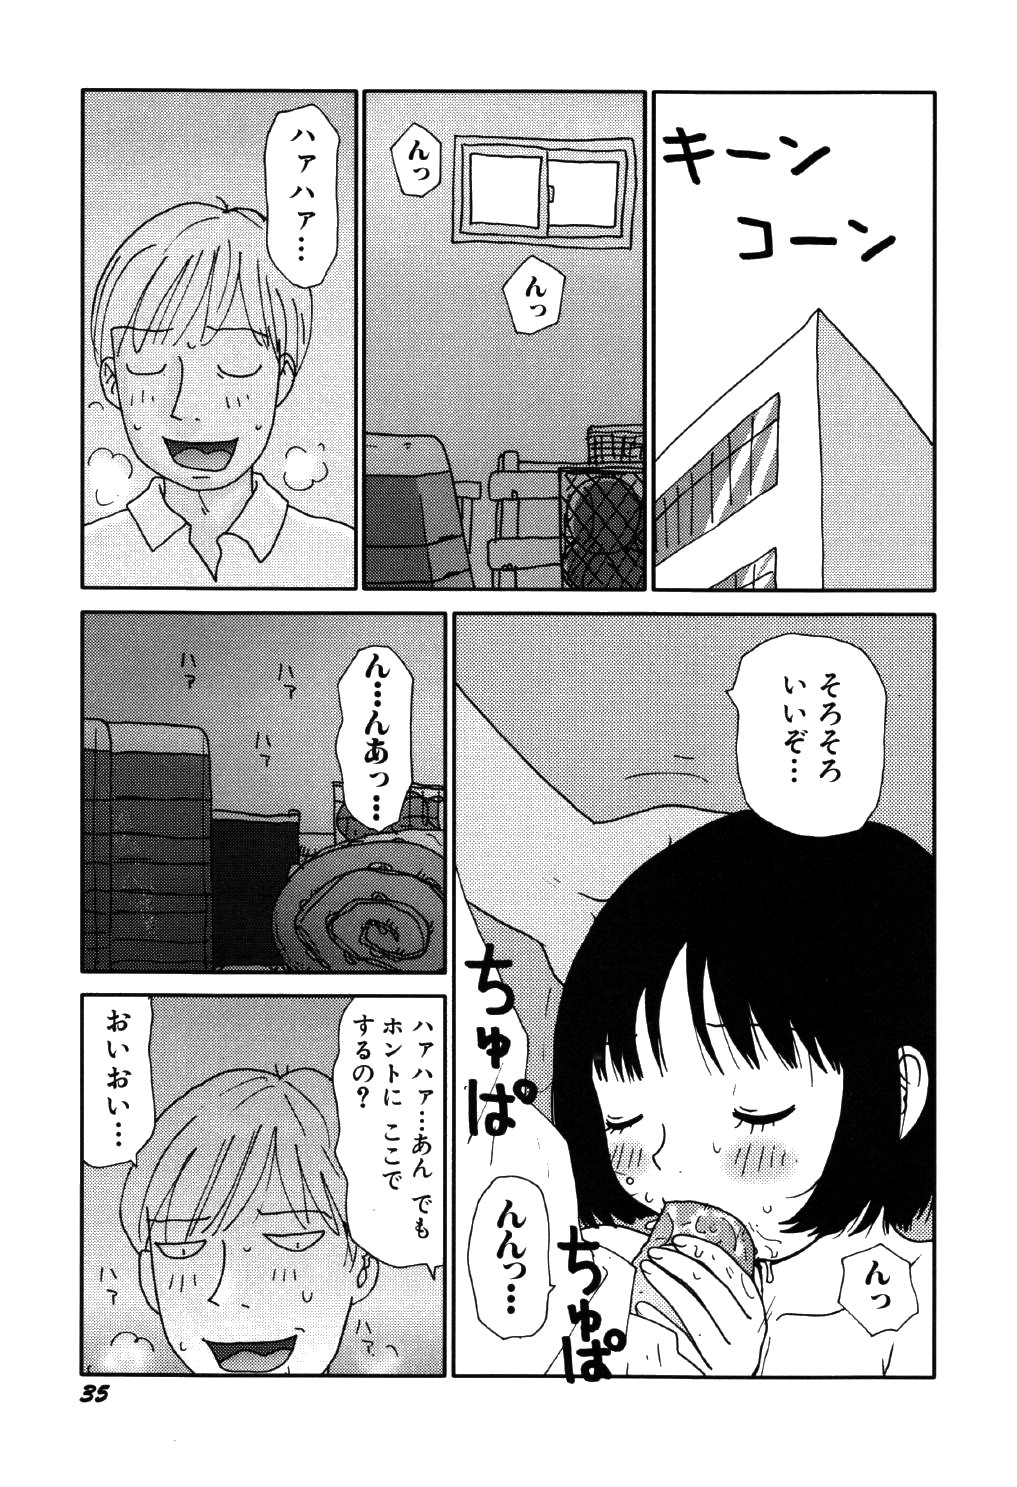 [Machino Henmaru] little yumiko chan page 39 full